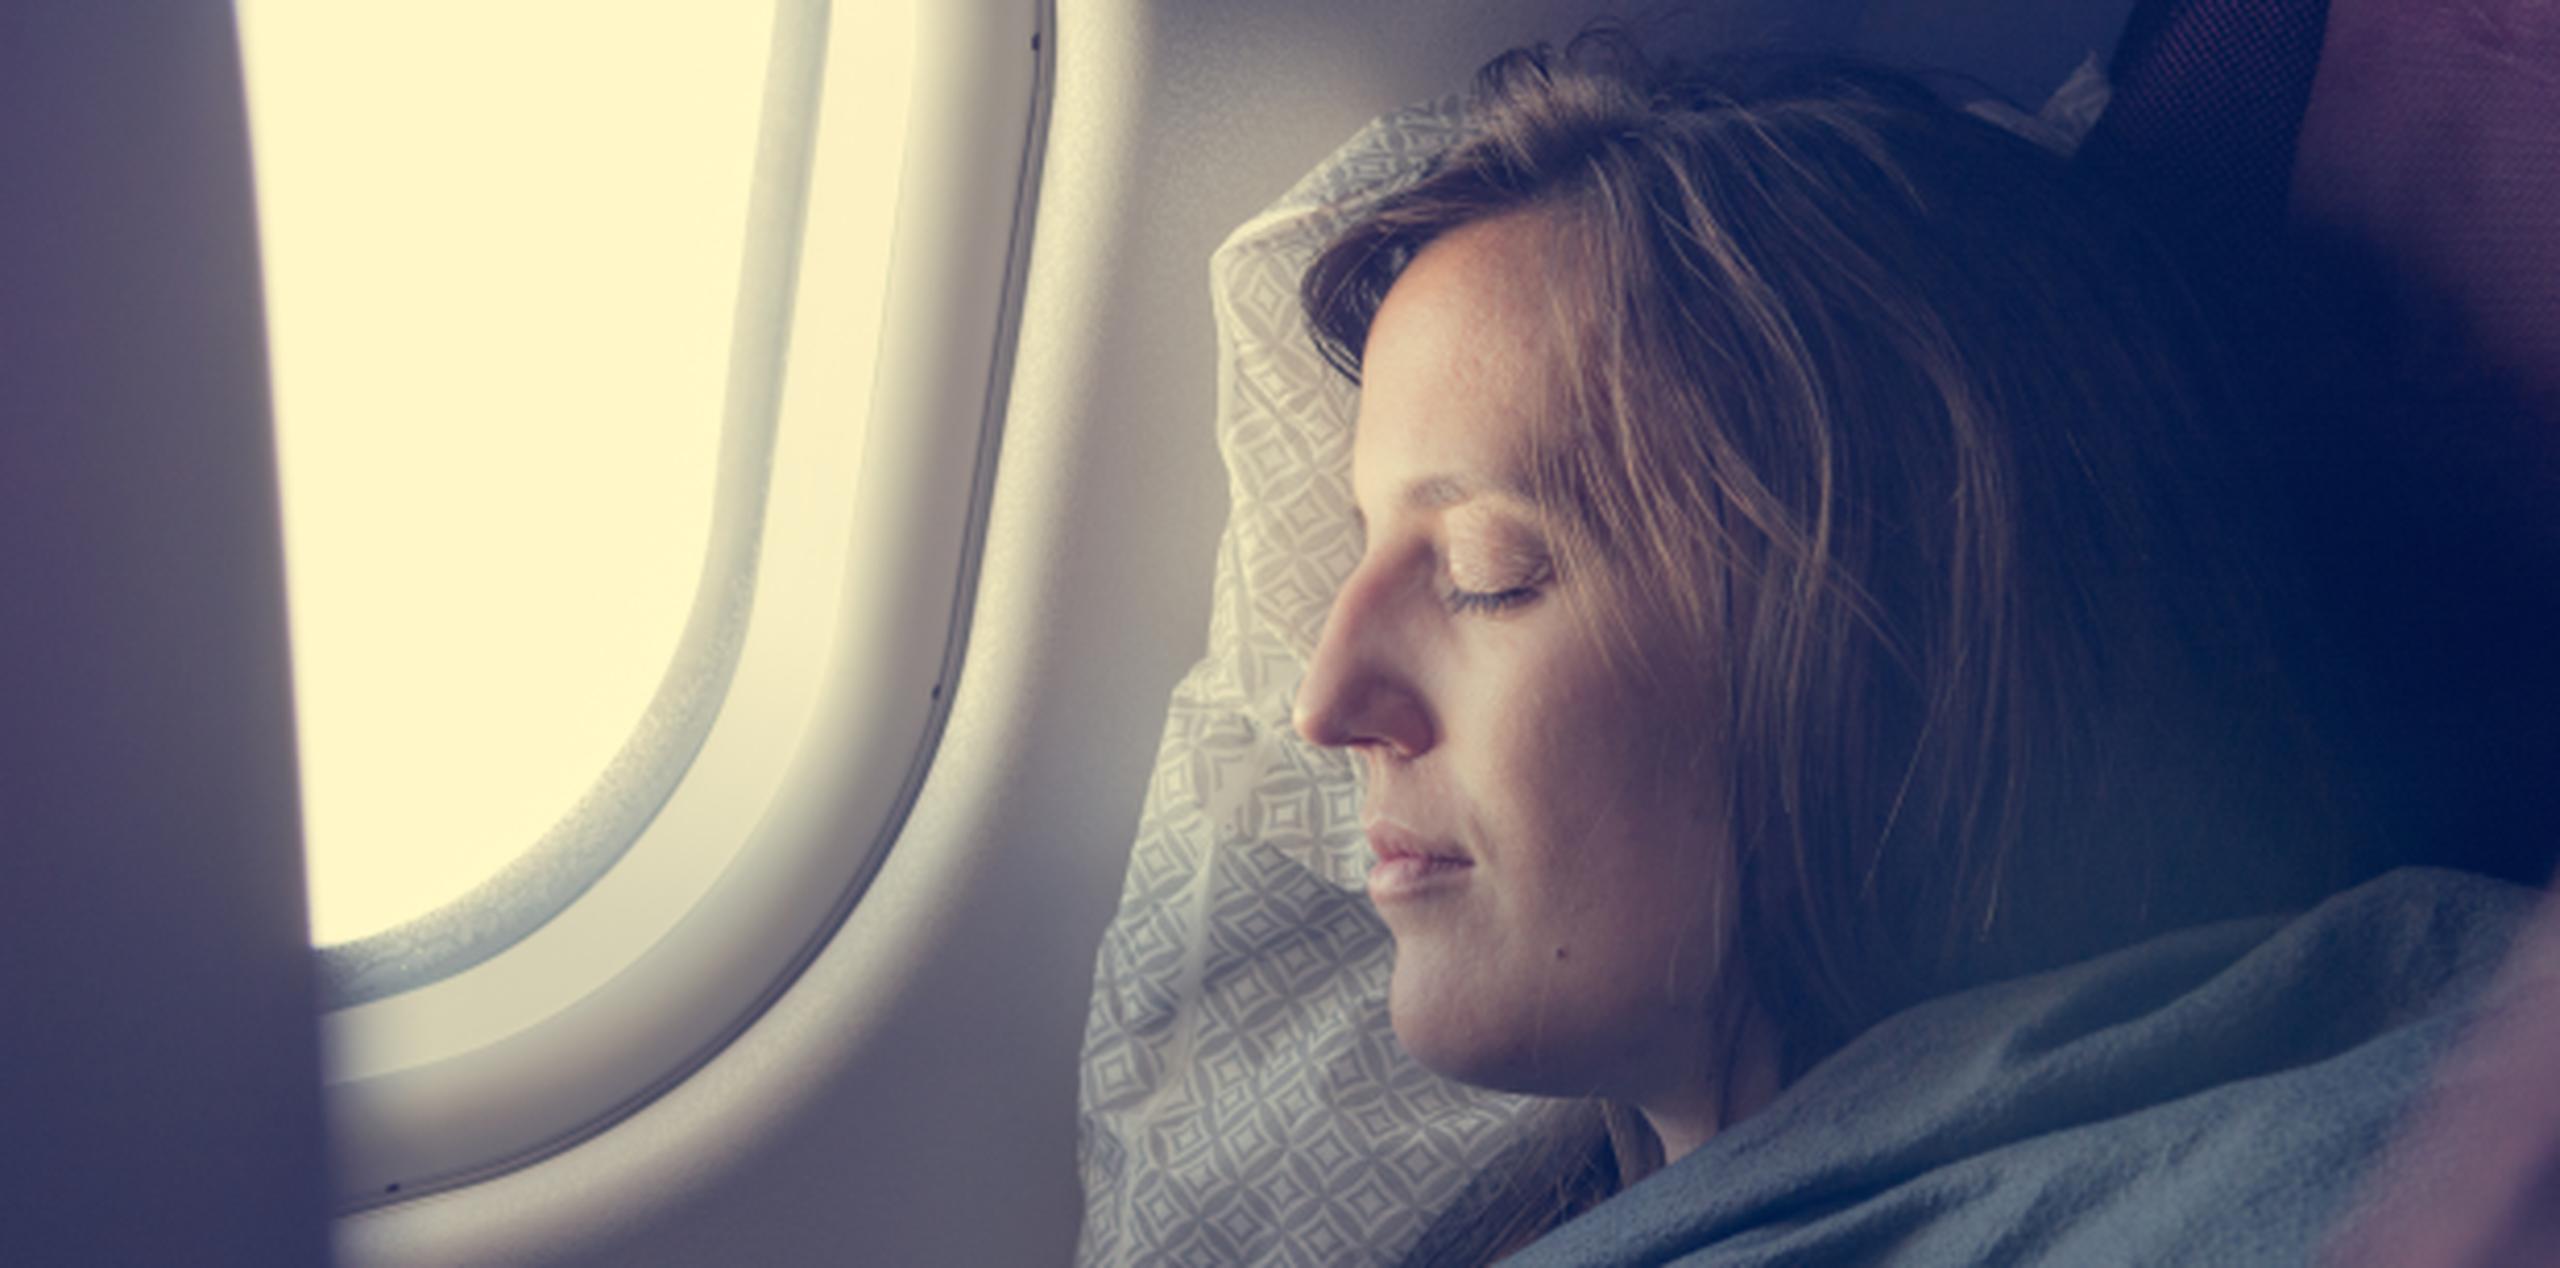 Las almohadas son una buena compañía para un viaje largo. (Shutterstock)